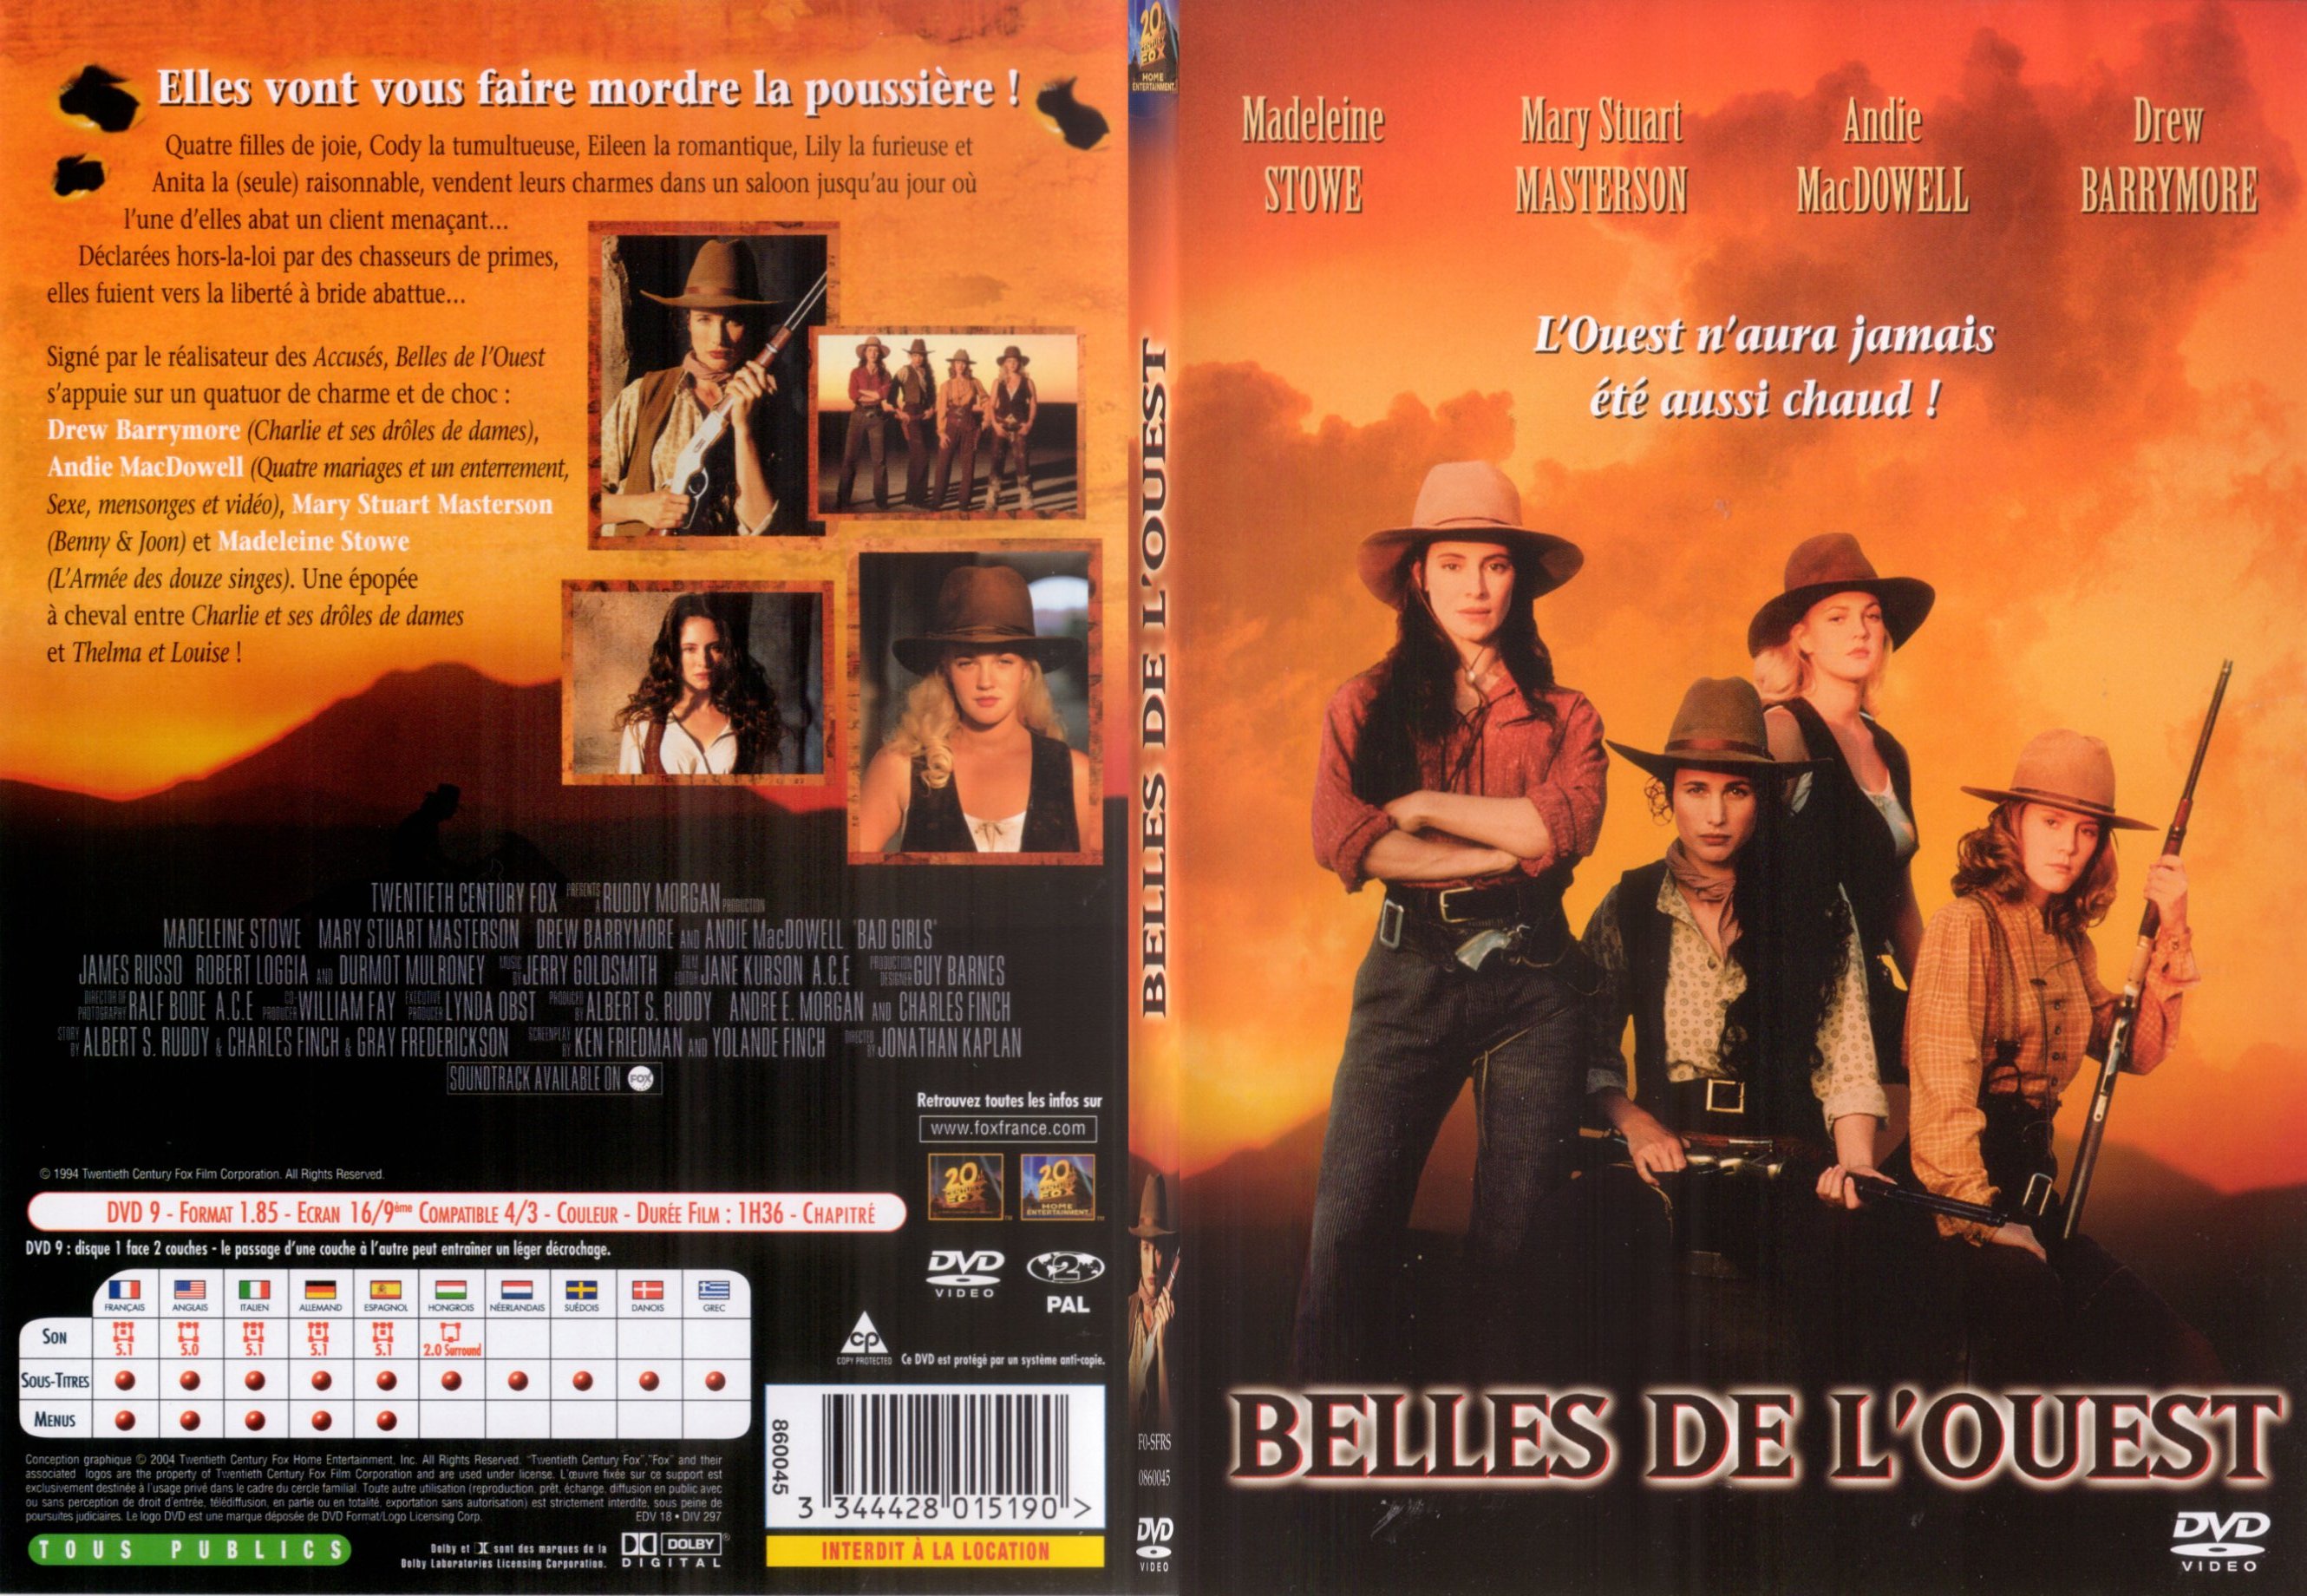 Jaquette DVD Belles de l